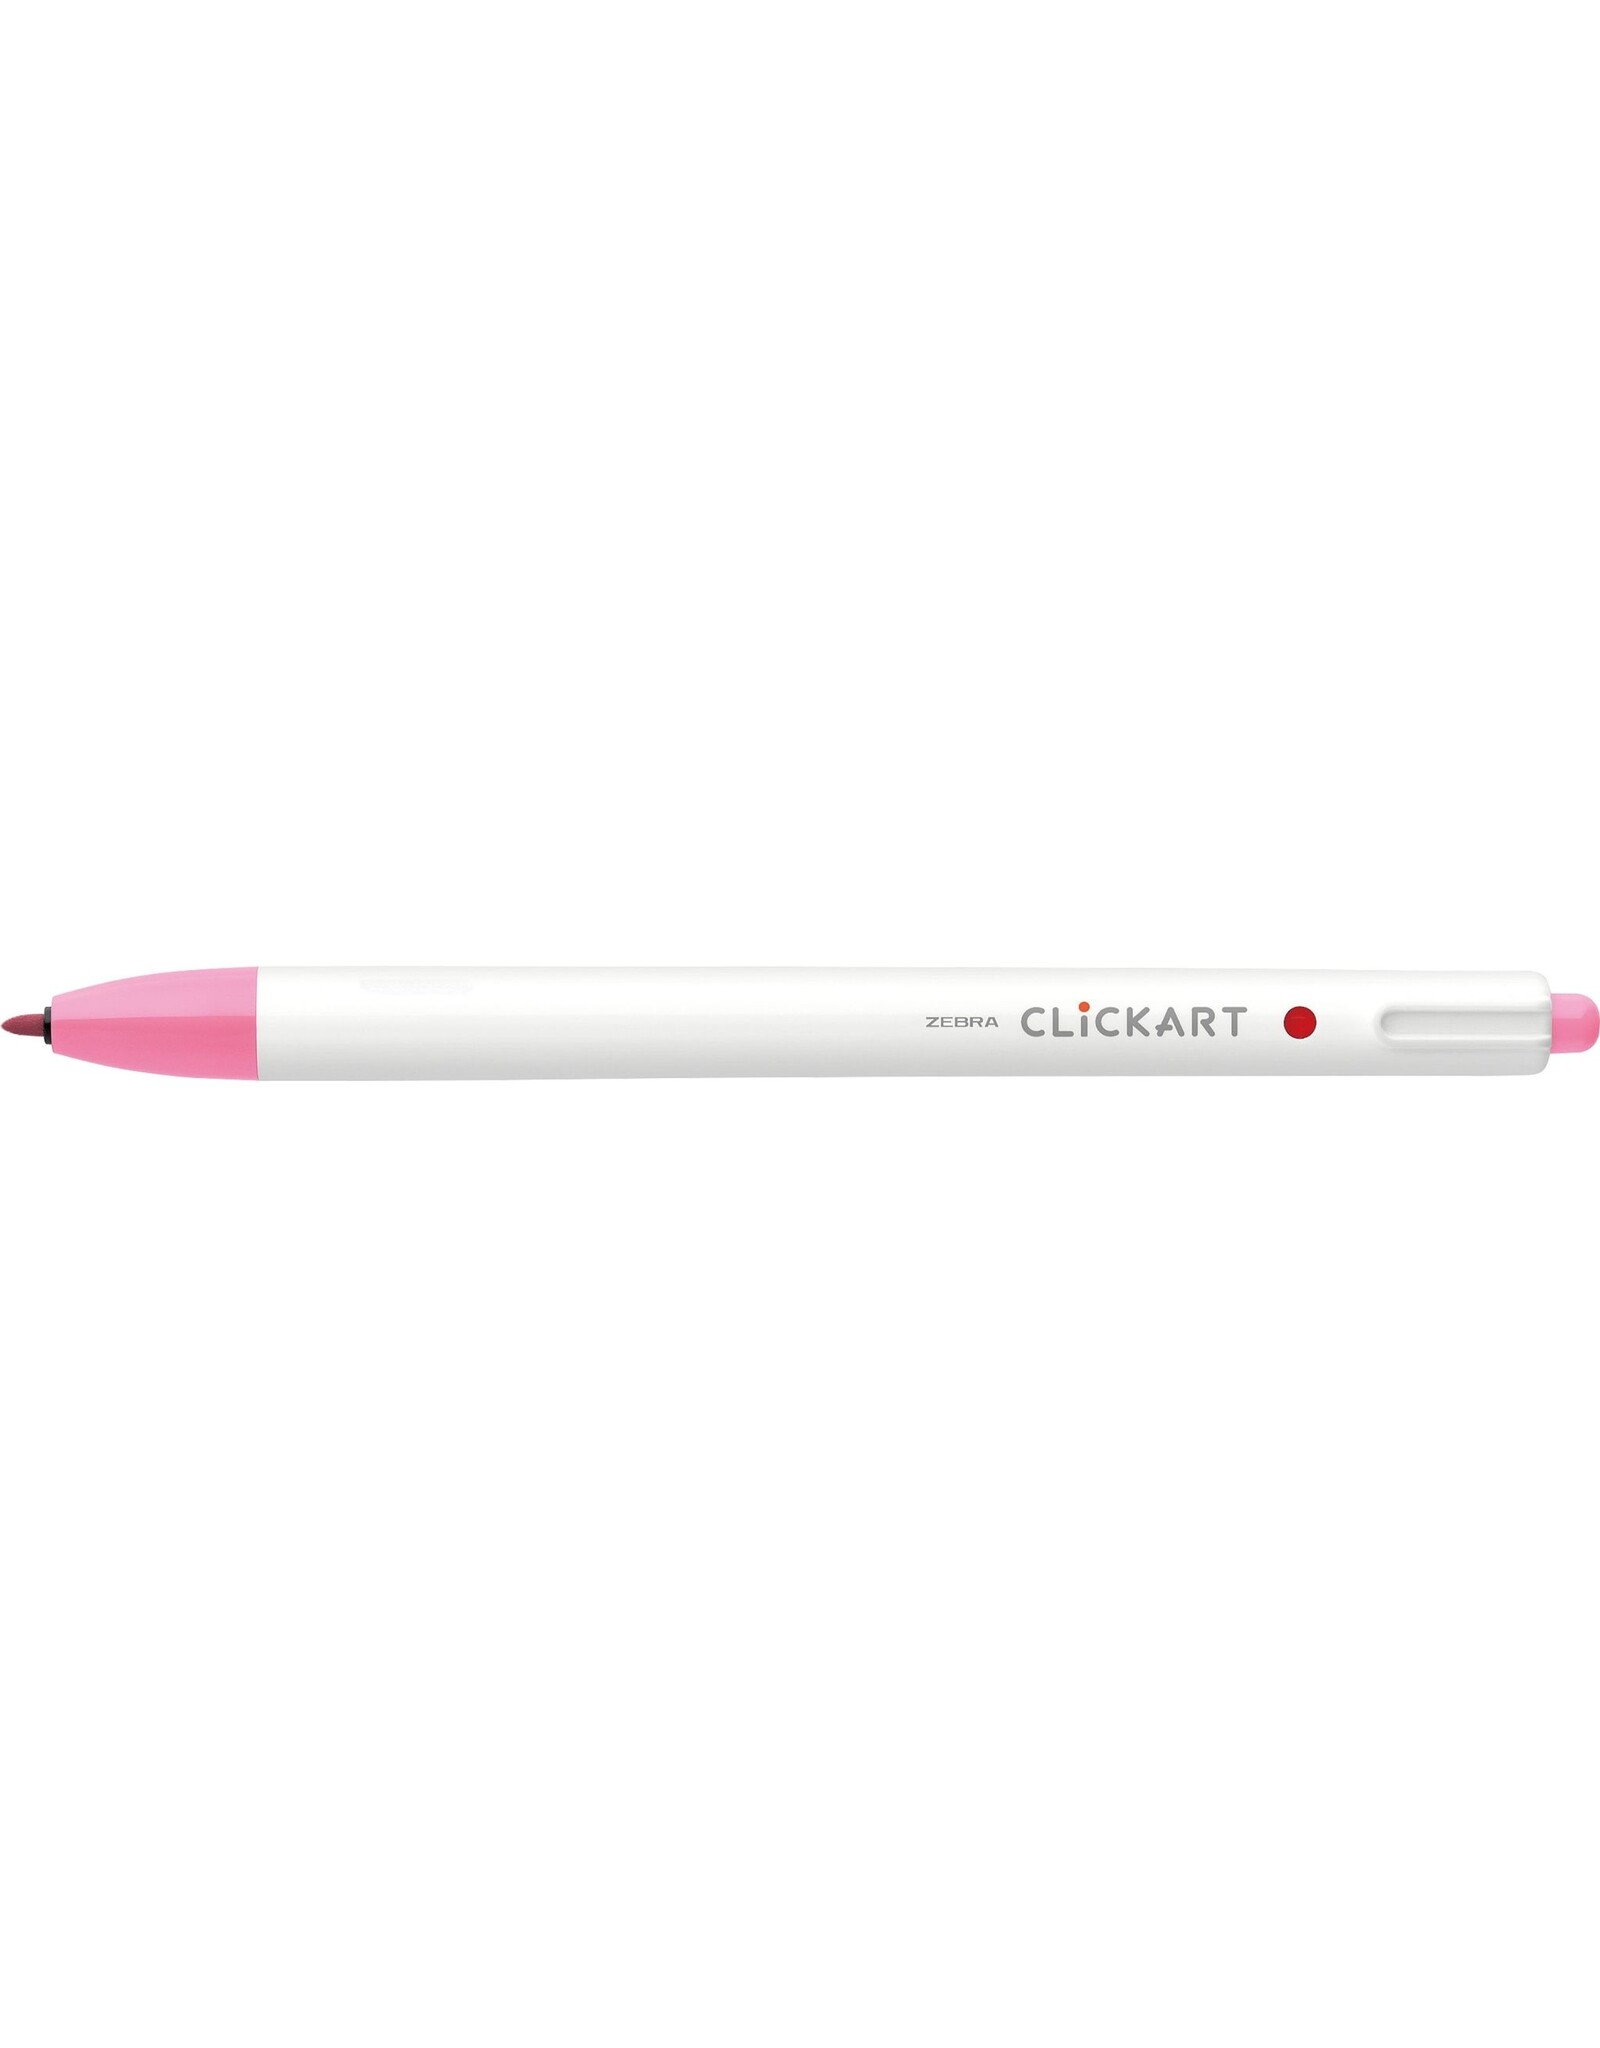 https://cdn.shoplightspeed.com/shops/636894/files/54752142/1600x2048x2/zebra-clickart-retractable-marker-pen-pink-f.jpg